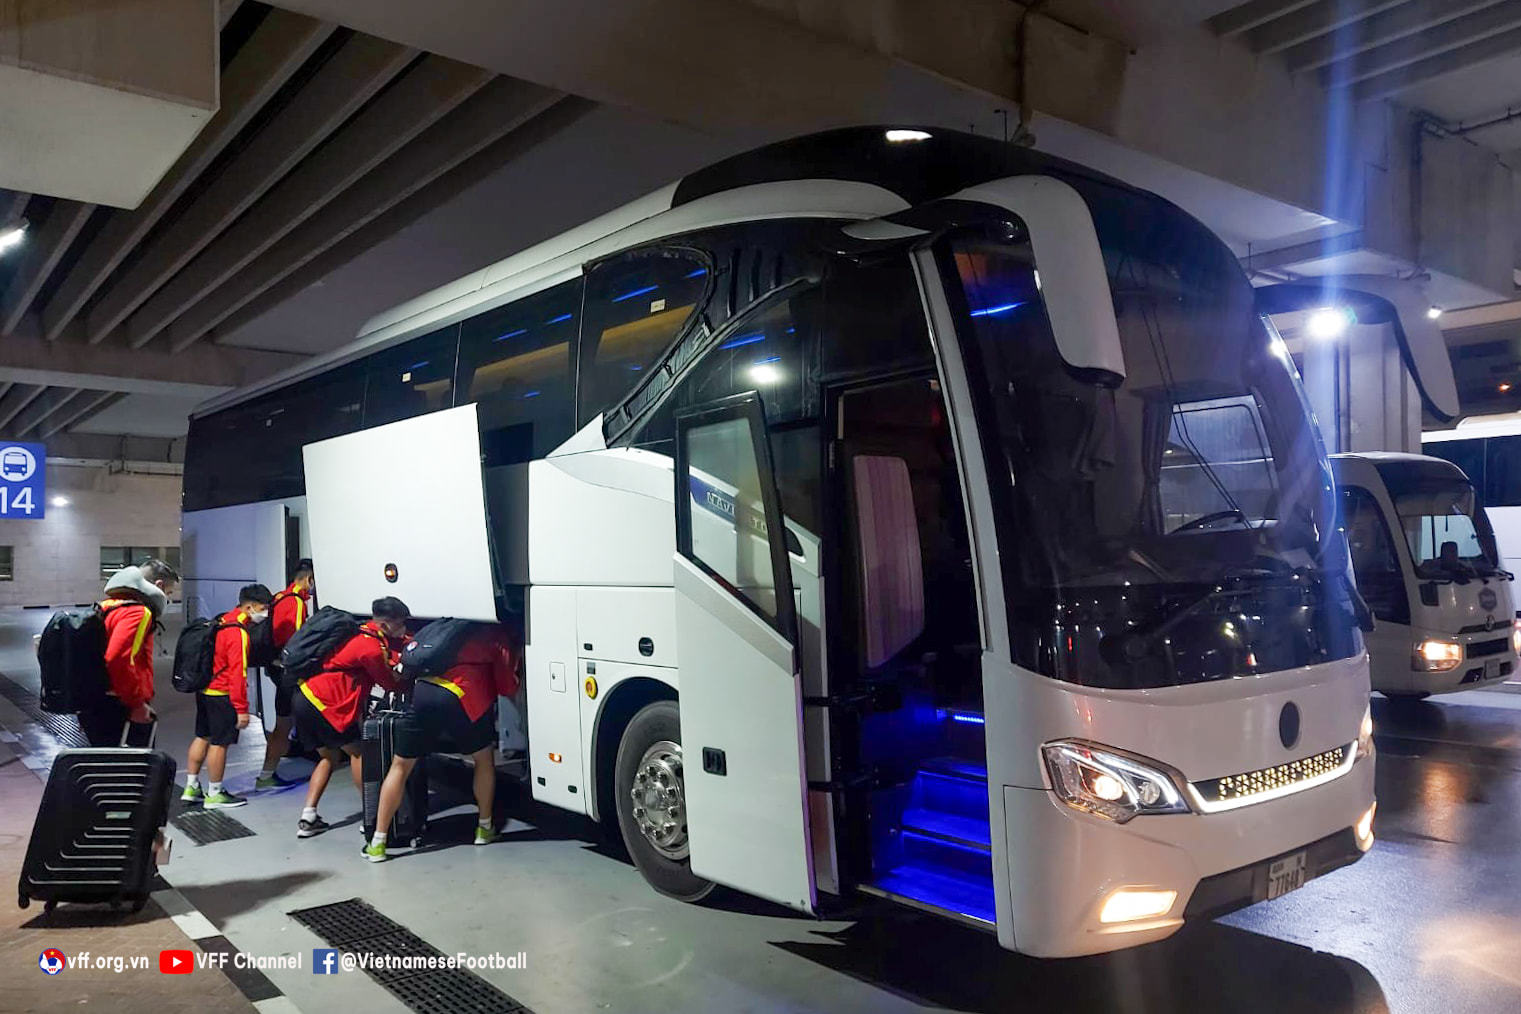 U23 Vietnam arrives in Dubai, ready to play Iraq, Croatia